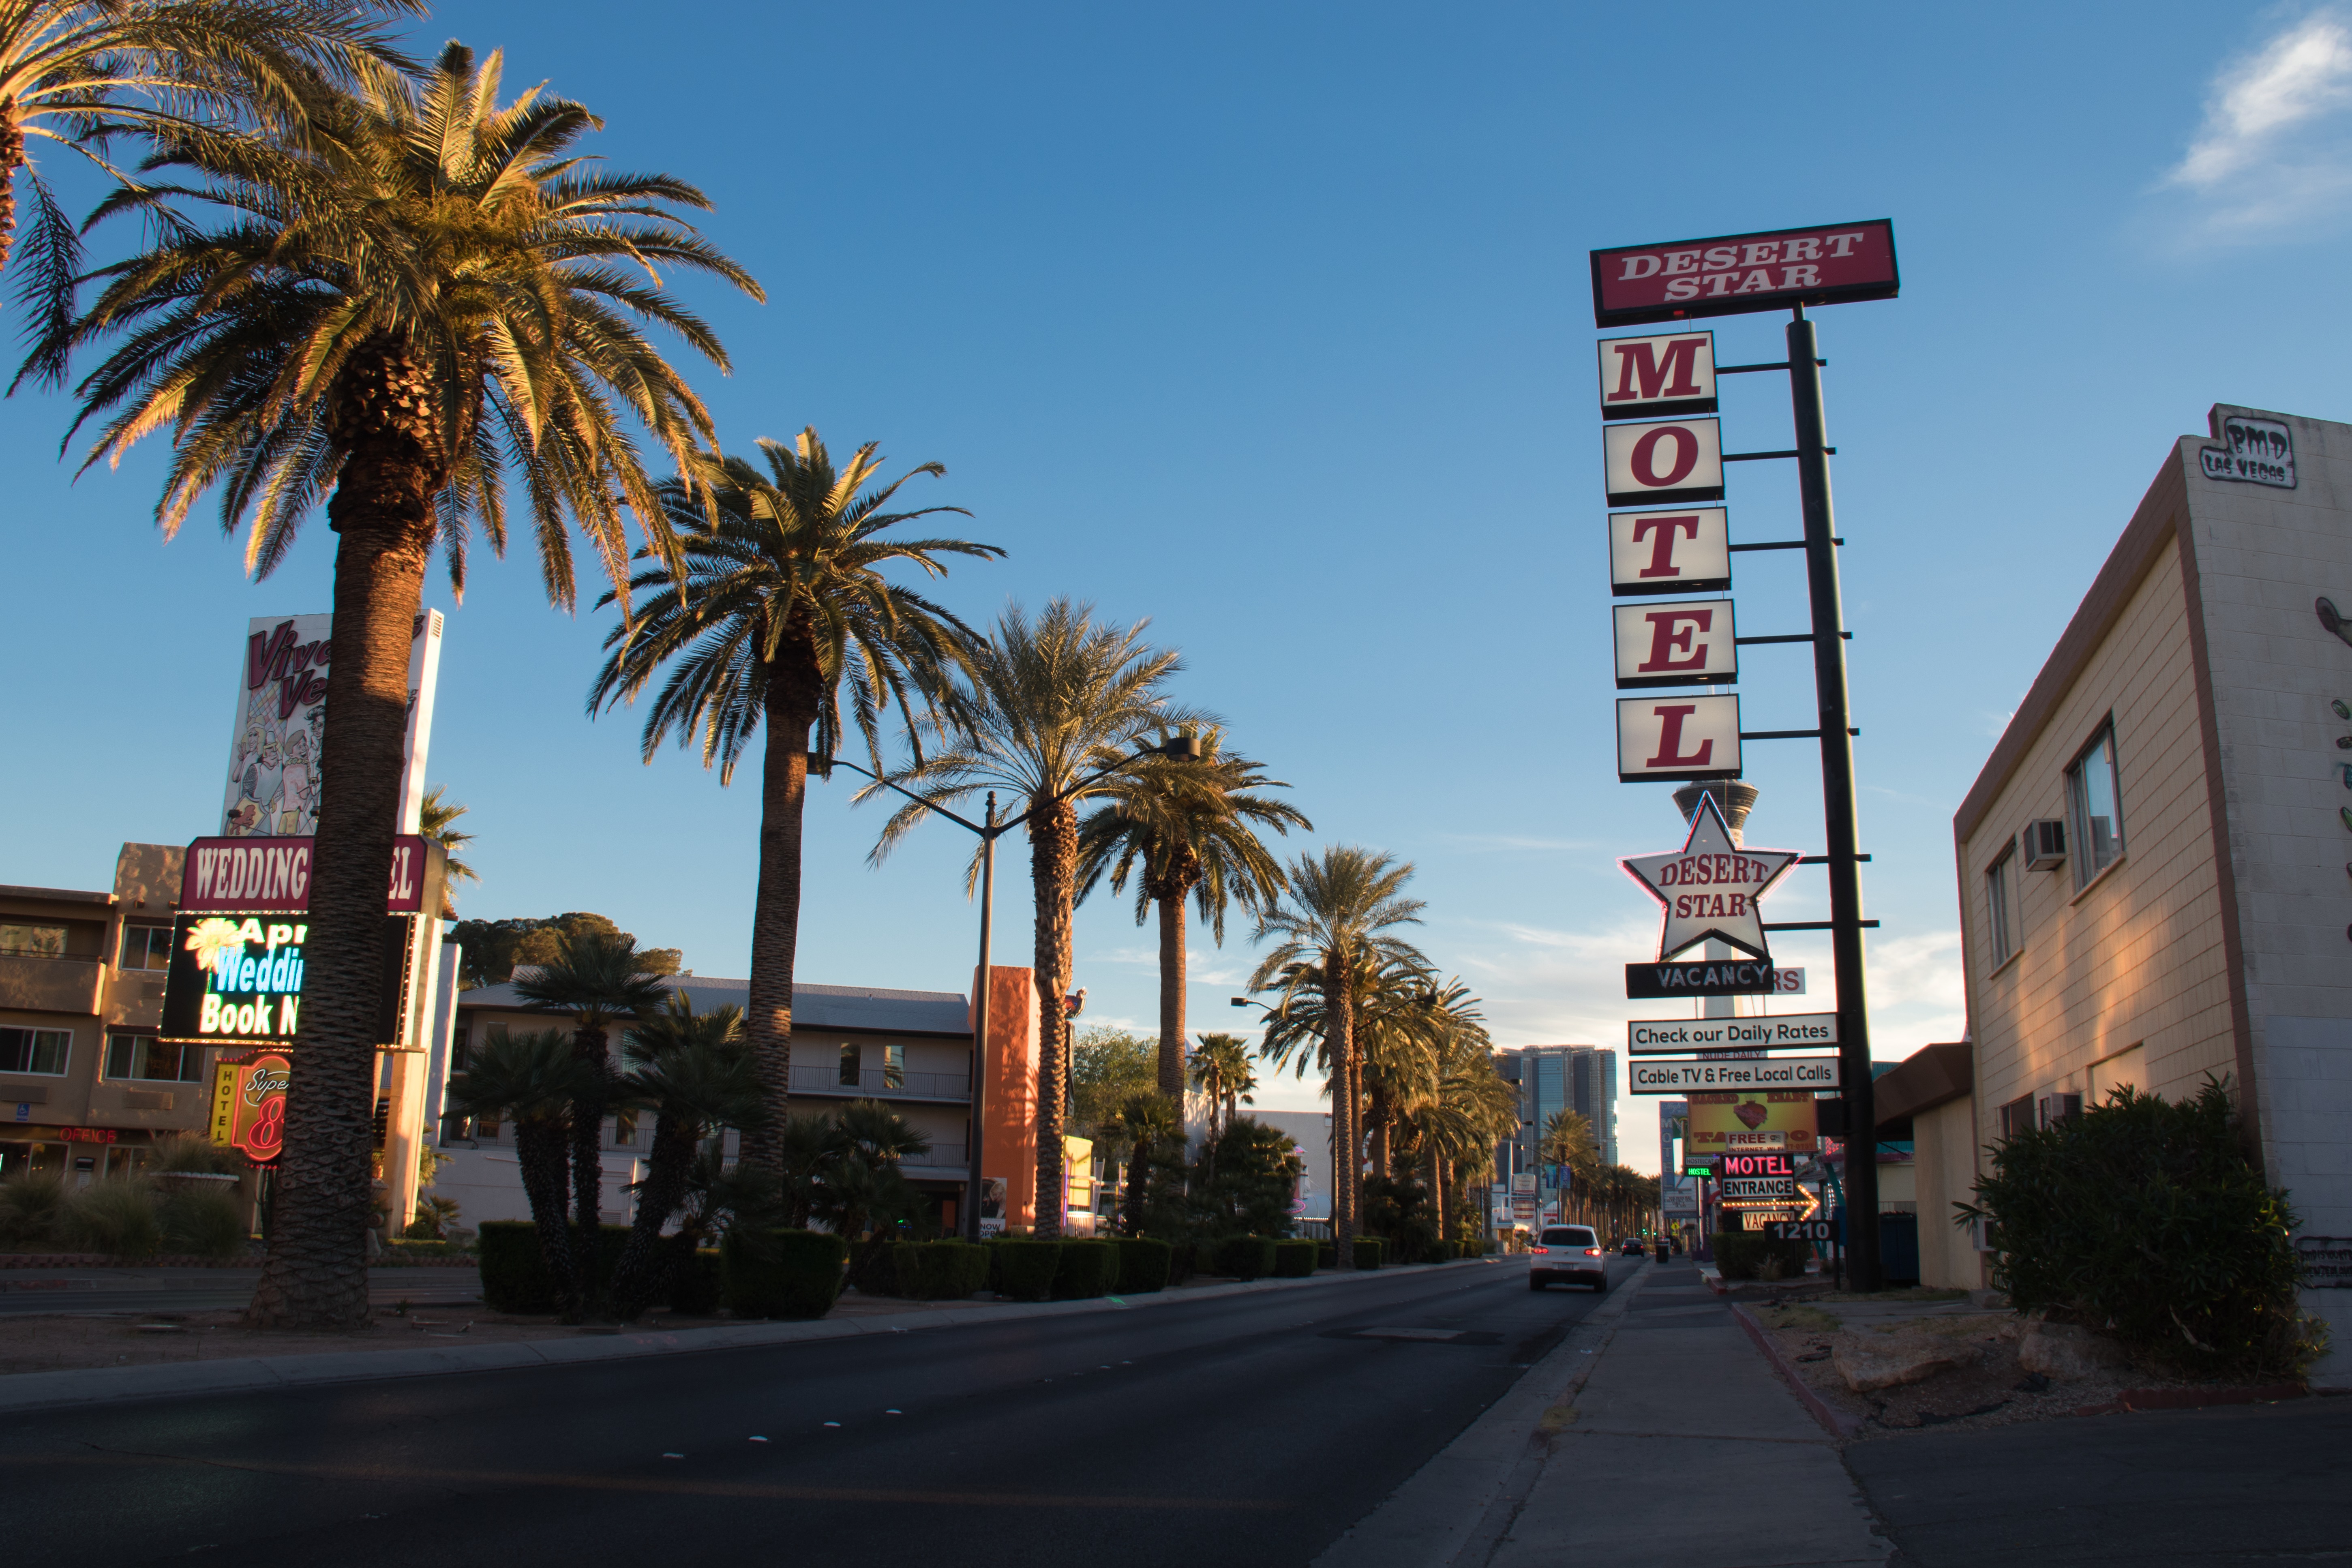 Photographs of Desert Star Motel sign, Las Vegas (Nev.), March 24, 2017